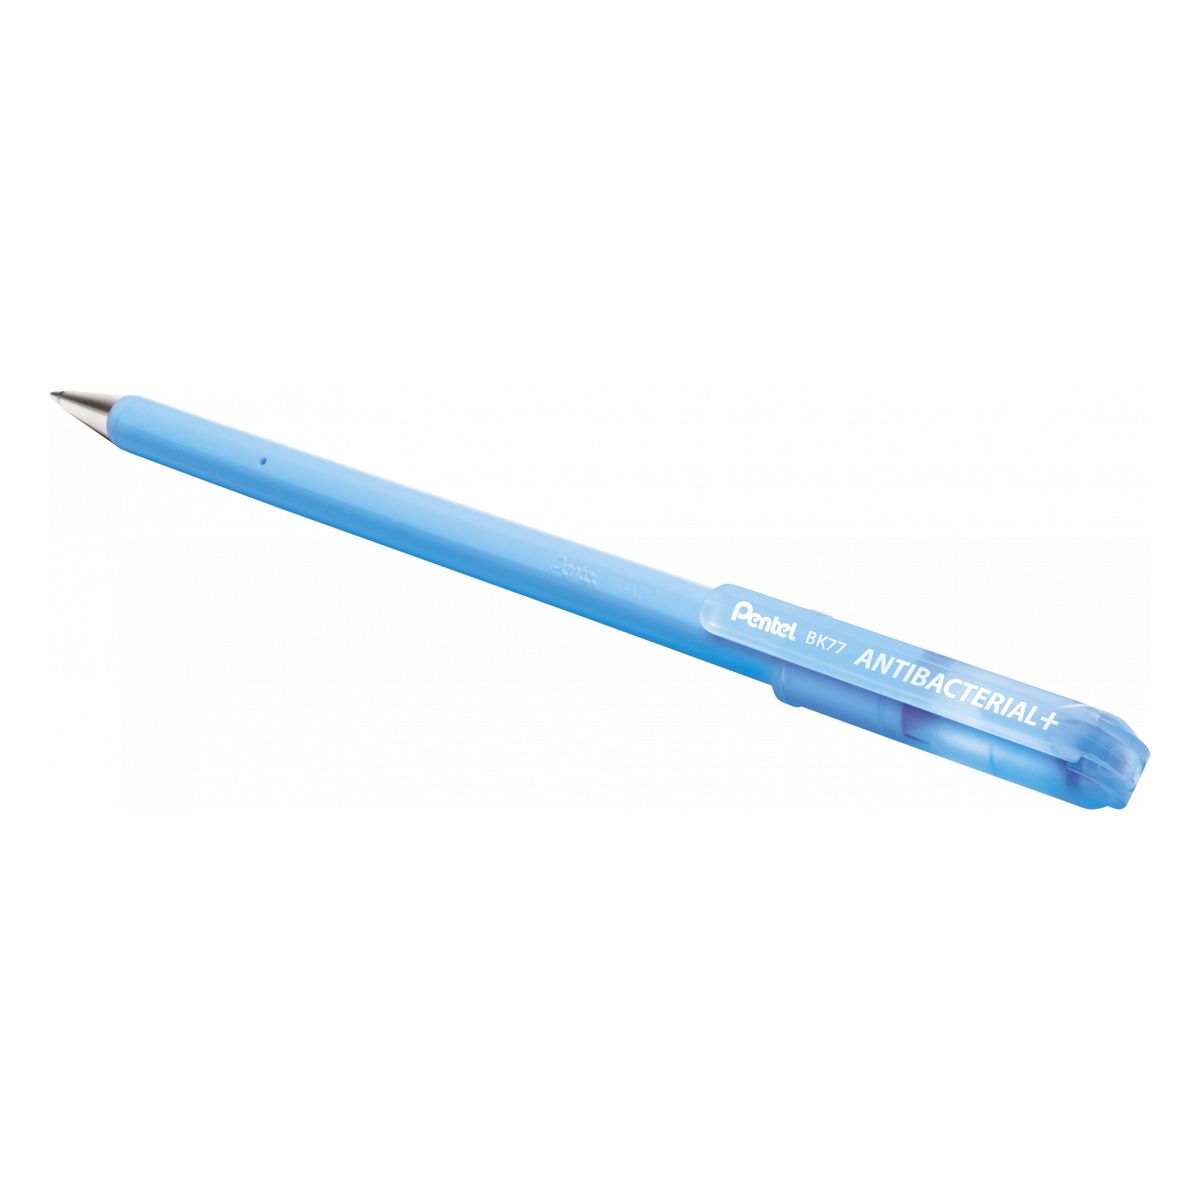 Długopis standardowy Pentel niebieski 0,27mm (BK77AB-CE)